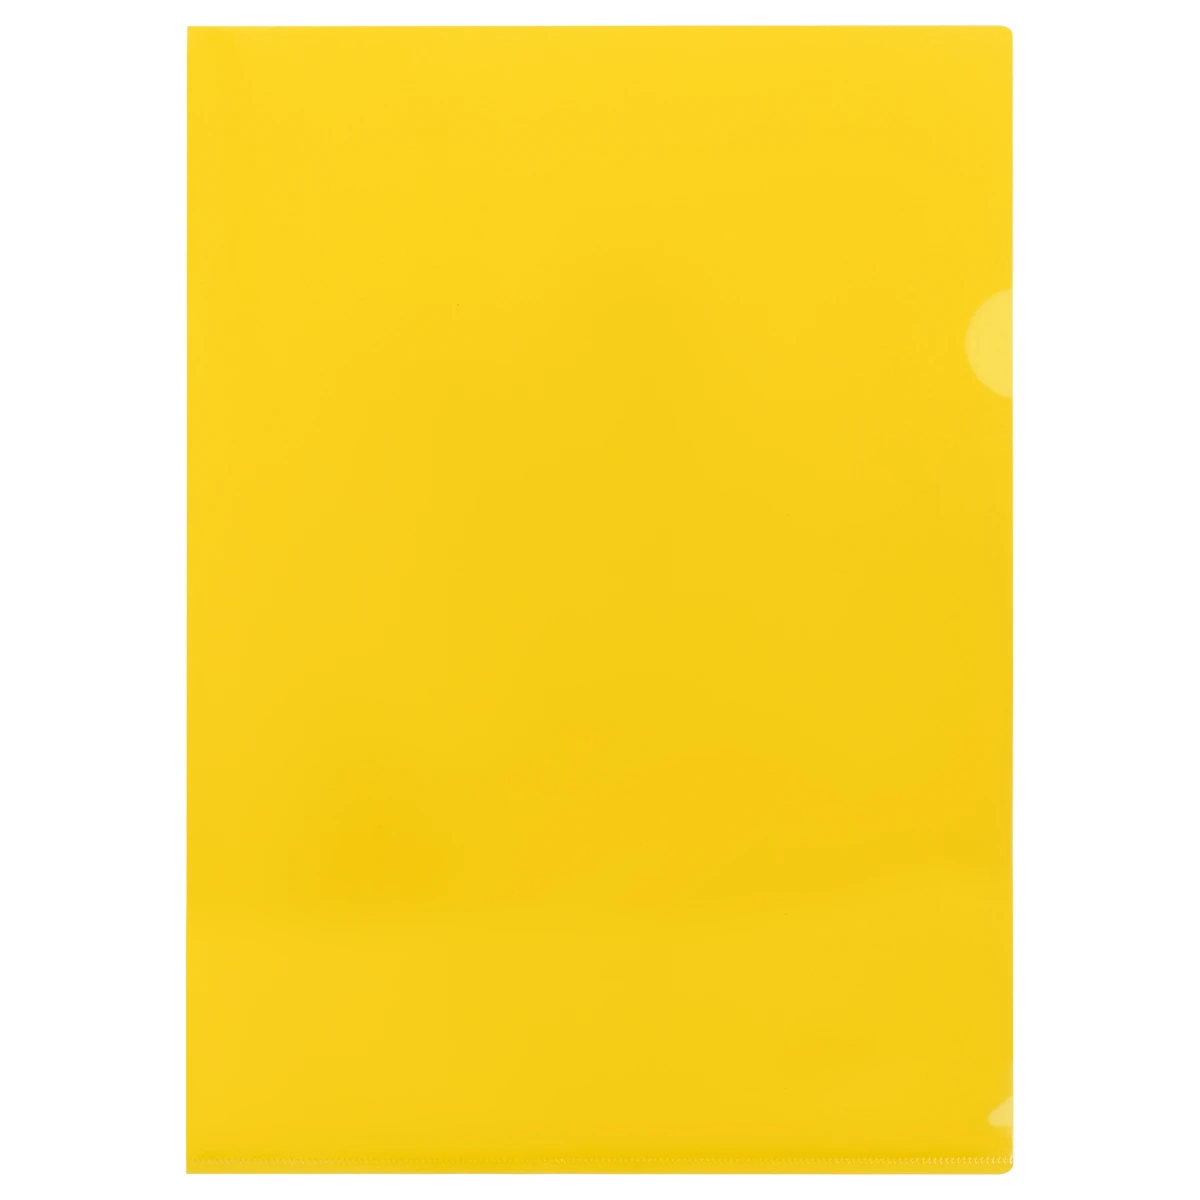 Папка-уголок СТАММ А4, 150мкм, пластик, прозрачная, желтая